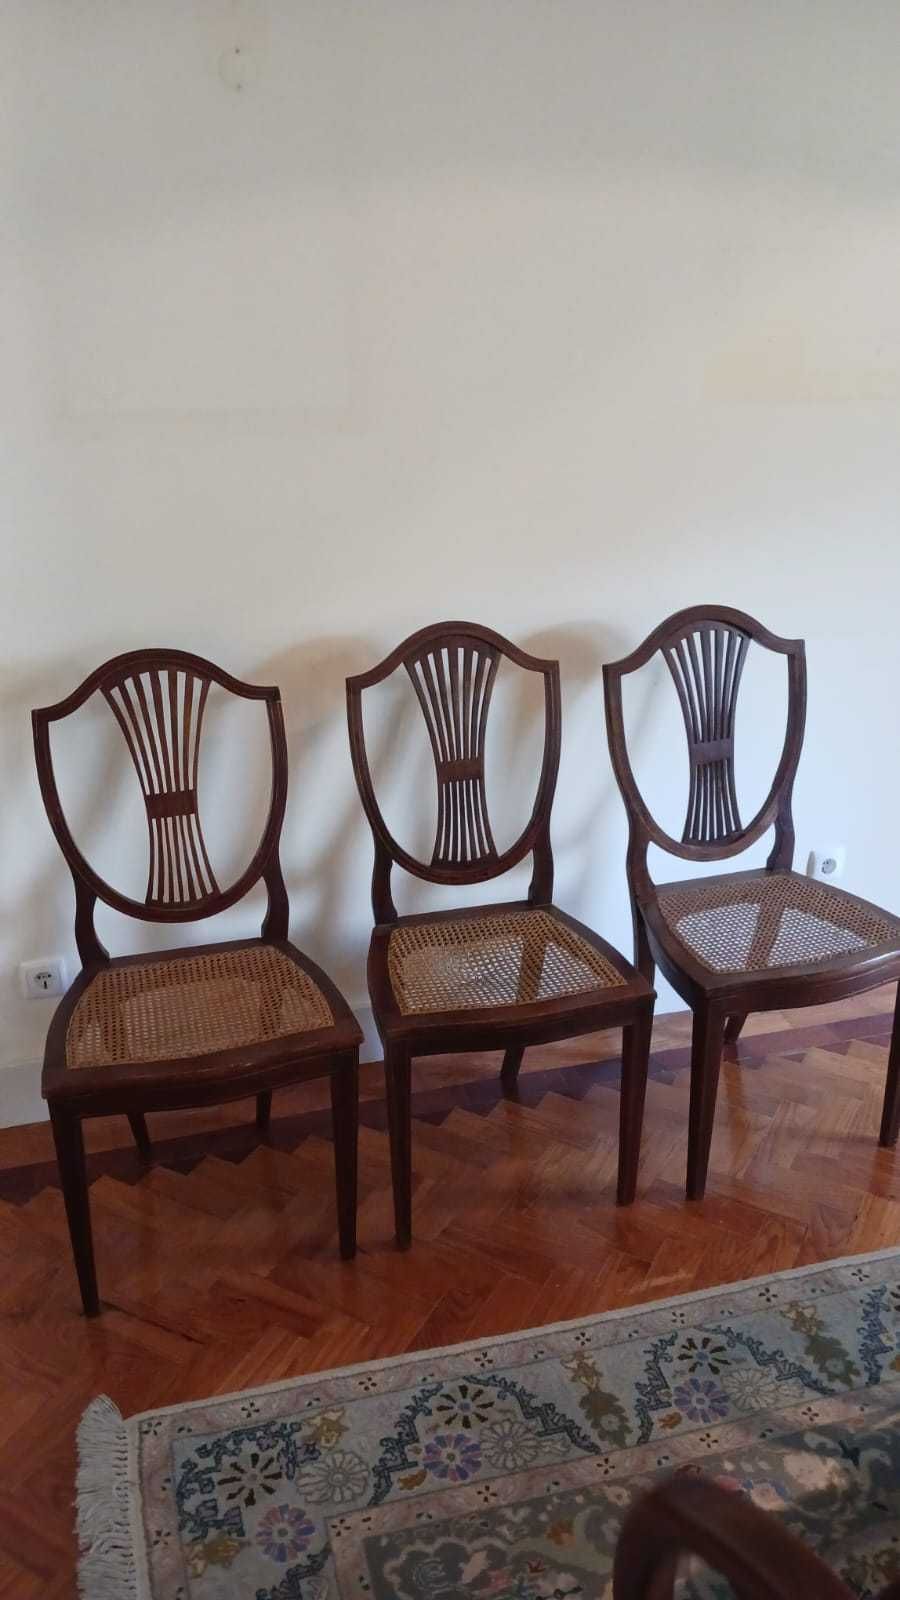 3 cadeiras com assento em palhinha